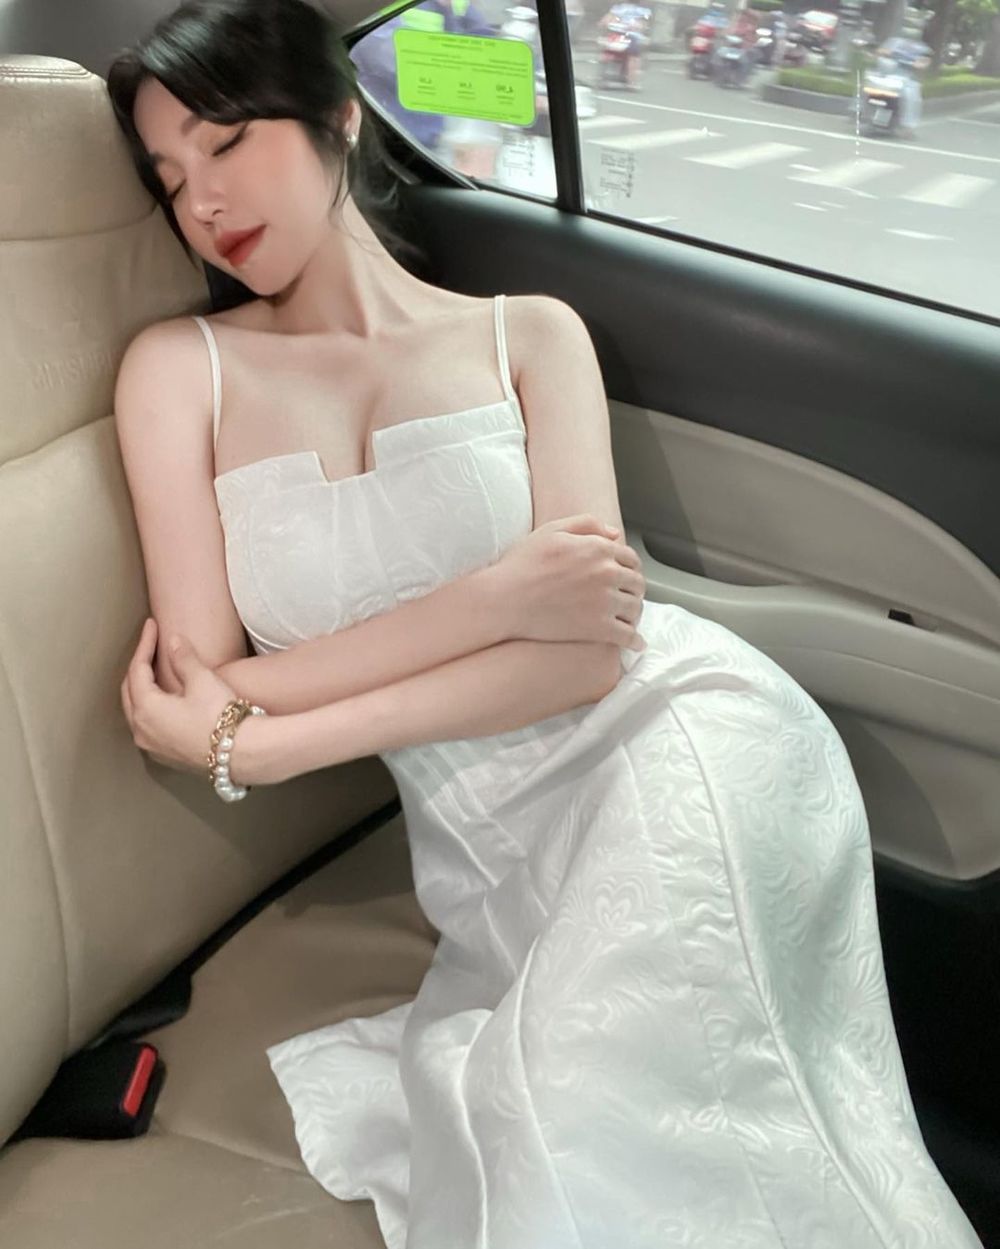  
Elly Trần chia sẻ hình ảnh ngủ gục trên xe cũng khiến người xem phải trầm trồ, cô diện chiếc đầm hai dây màu trắng trẻ trung. (Ảnh: FBNV)